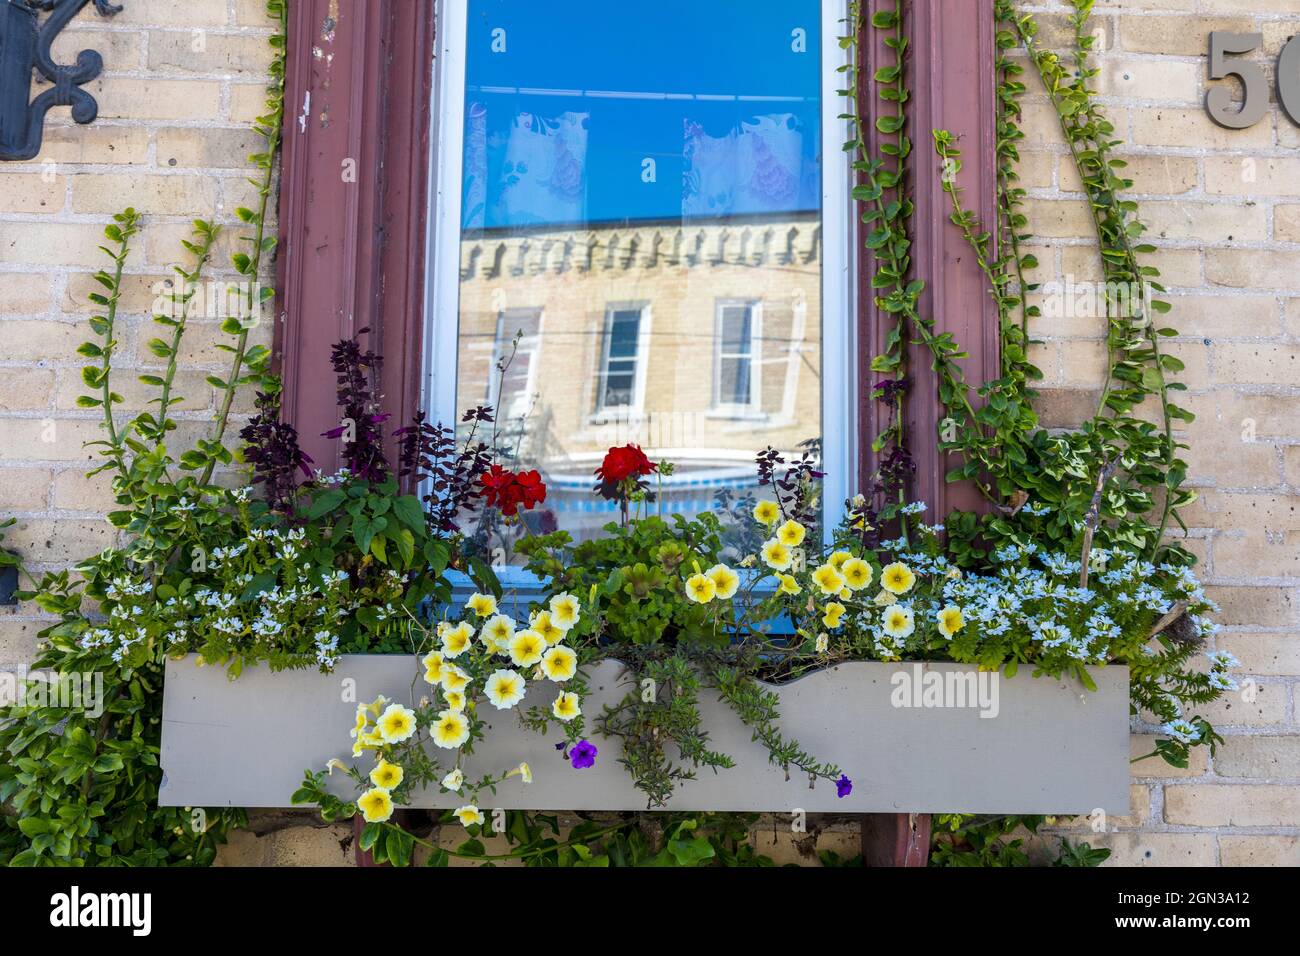 Riflessione in Una finestra con una finestra Box con fiori e un Ontario Canada Heritage Building riflesso nel vetro Foto Stock